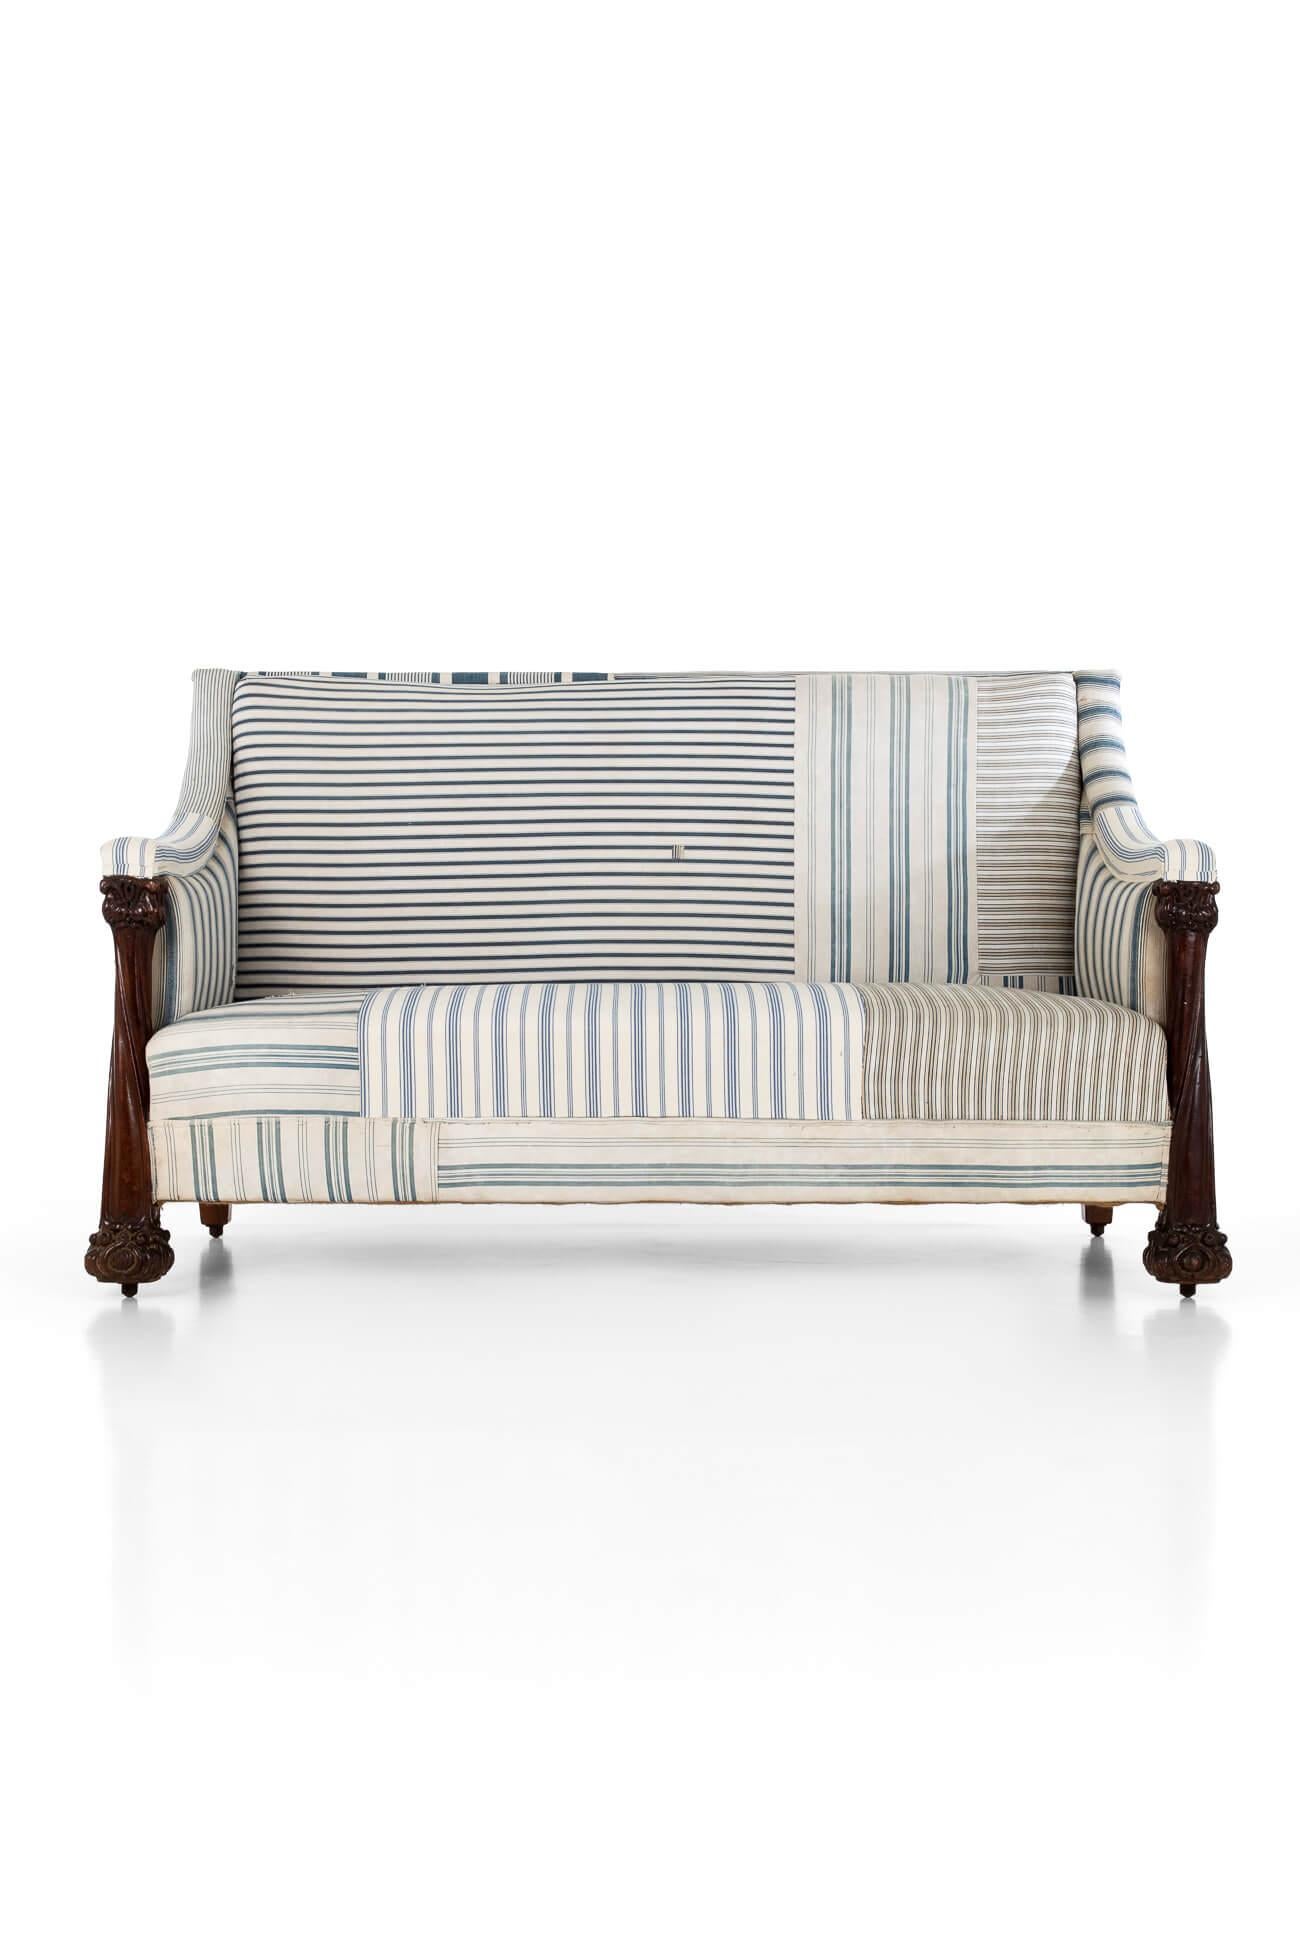 Ein wunderschönes und einzigartiges Arts and Crafts-Sofa mit original blauem Streifendrellbezug.

Mit einer großzügigen geraden Rückenlehne, begleitet von sanft geschwungenen, gepolsterten Armlehnen, die zu zwei großen, geschnitzten Mahagonisäulen